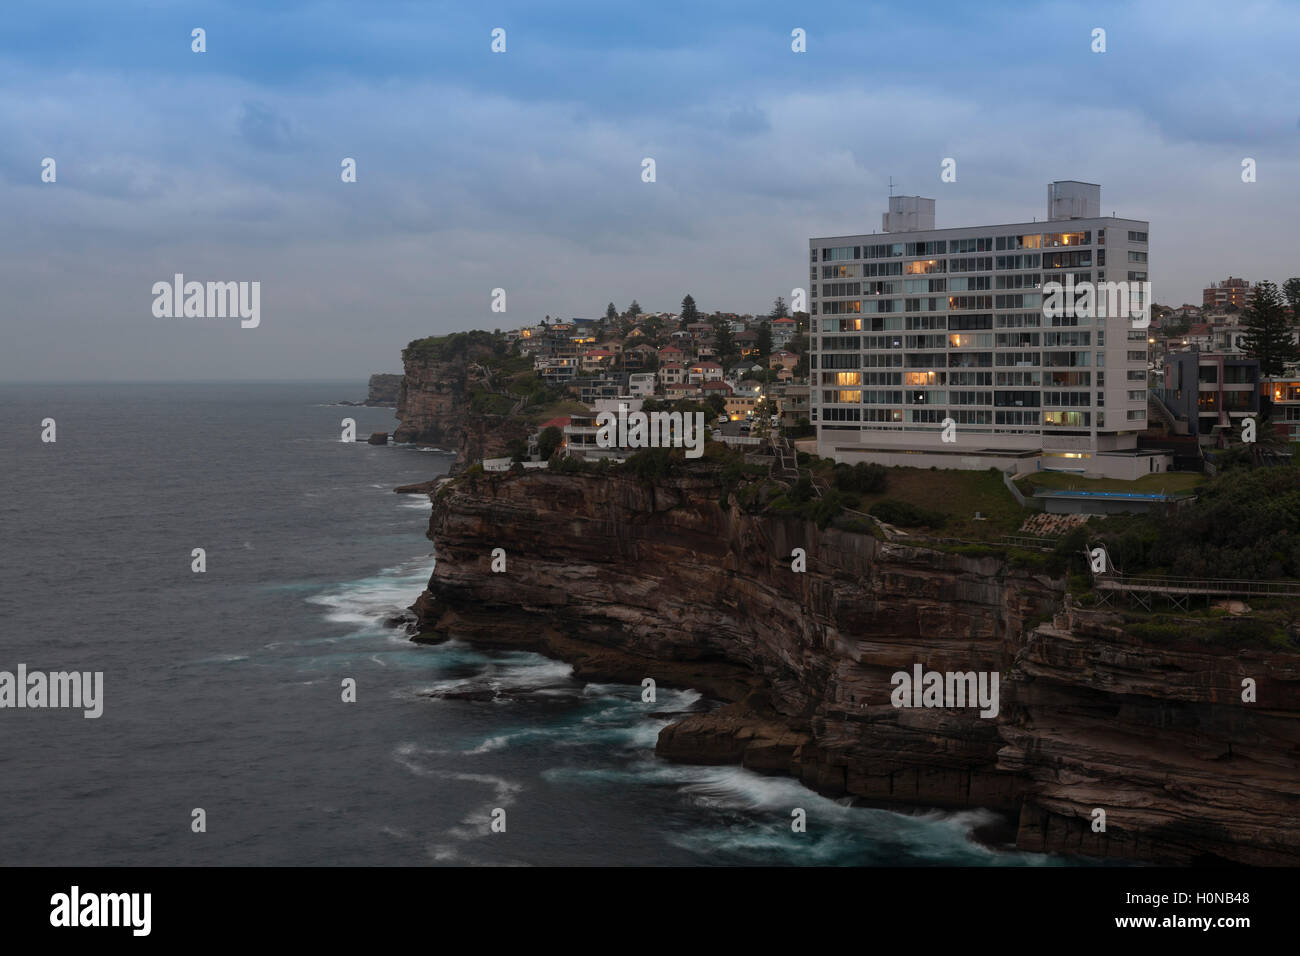 Abendlicht auf diesem ikonischen Apartmentgebäude in Diamond Bay Sydney, Australien Stockfoto